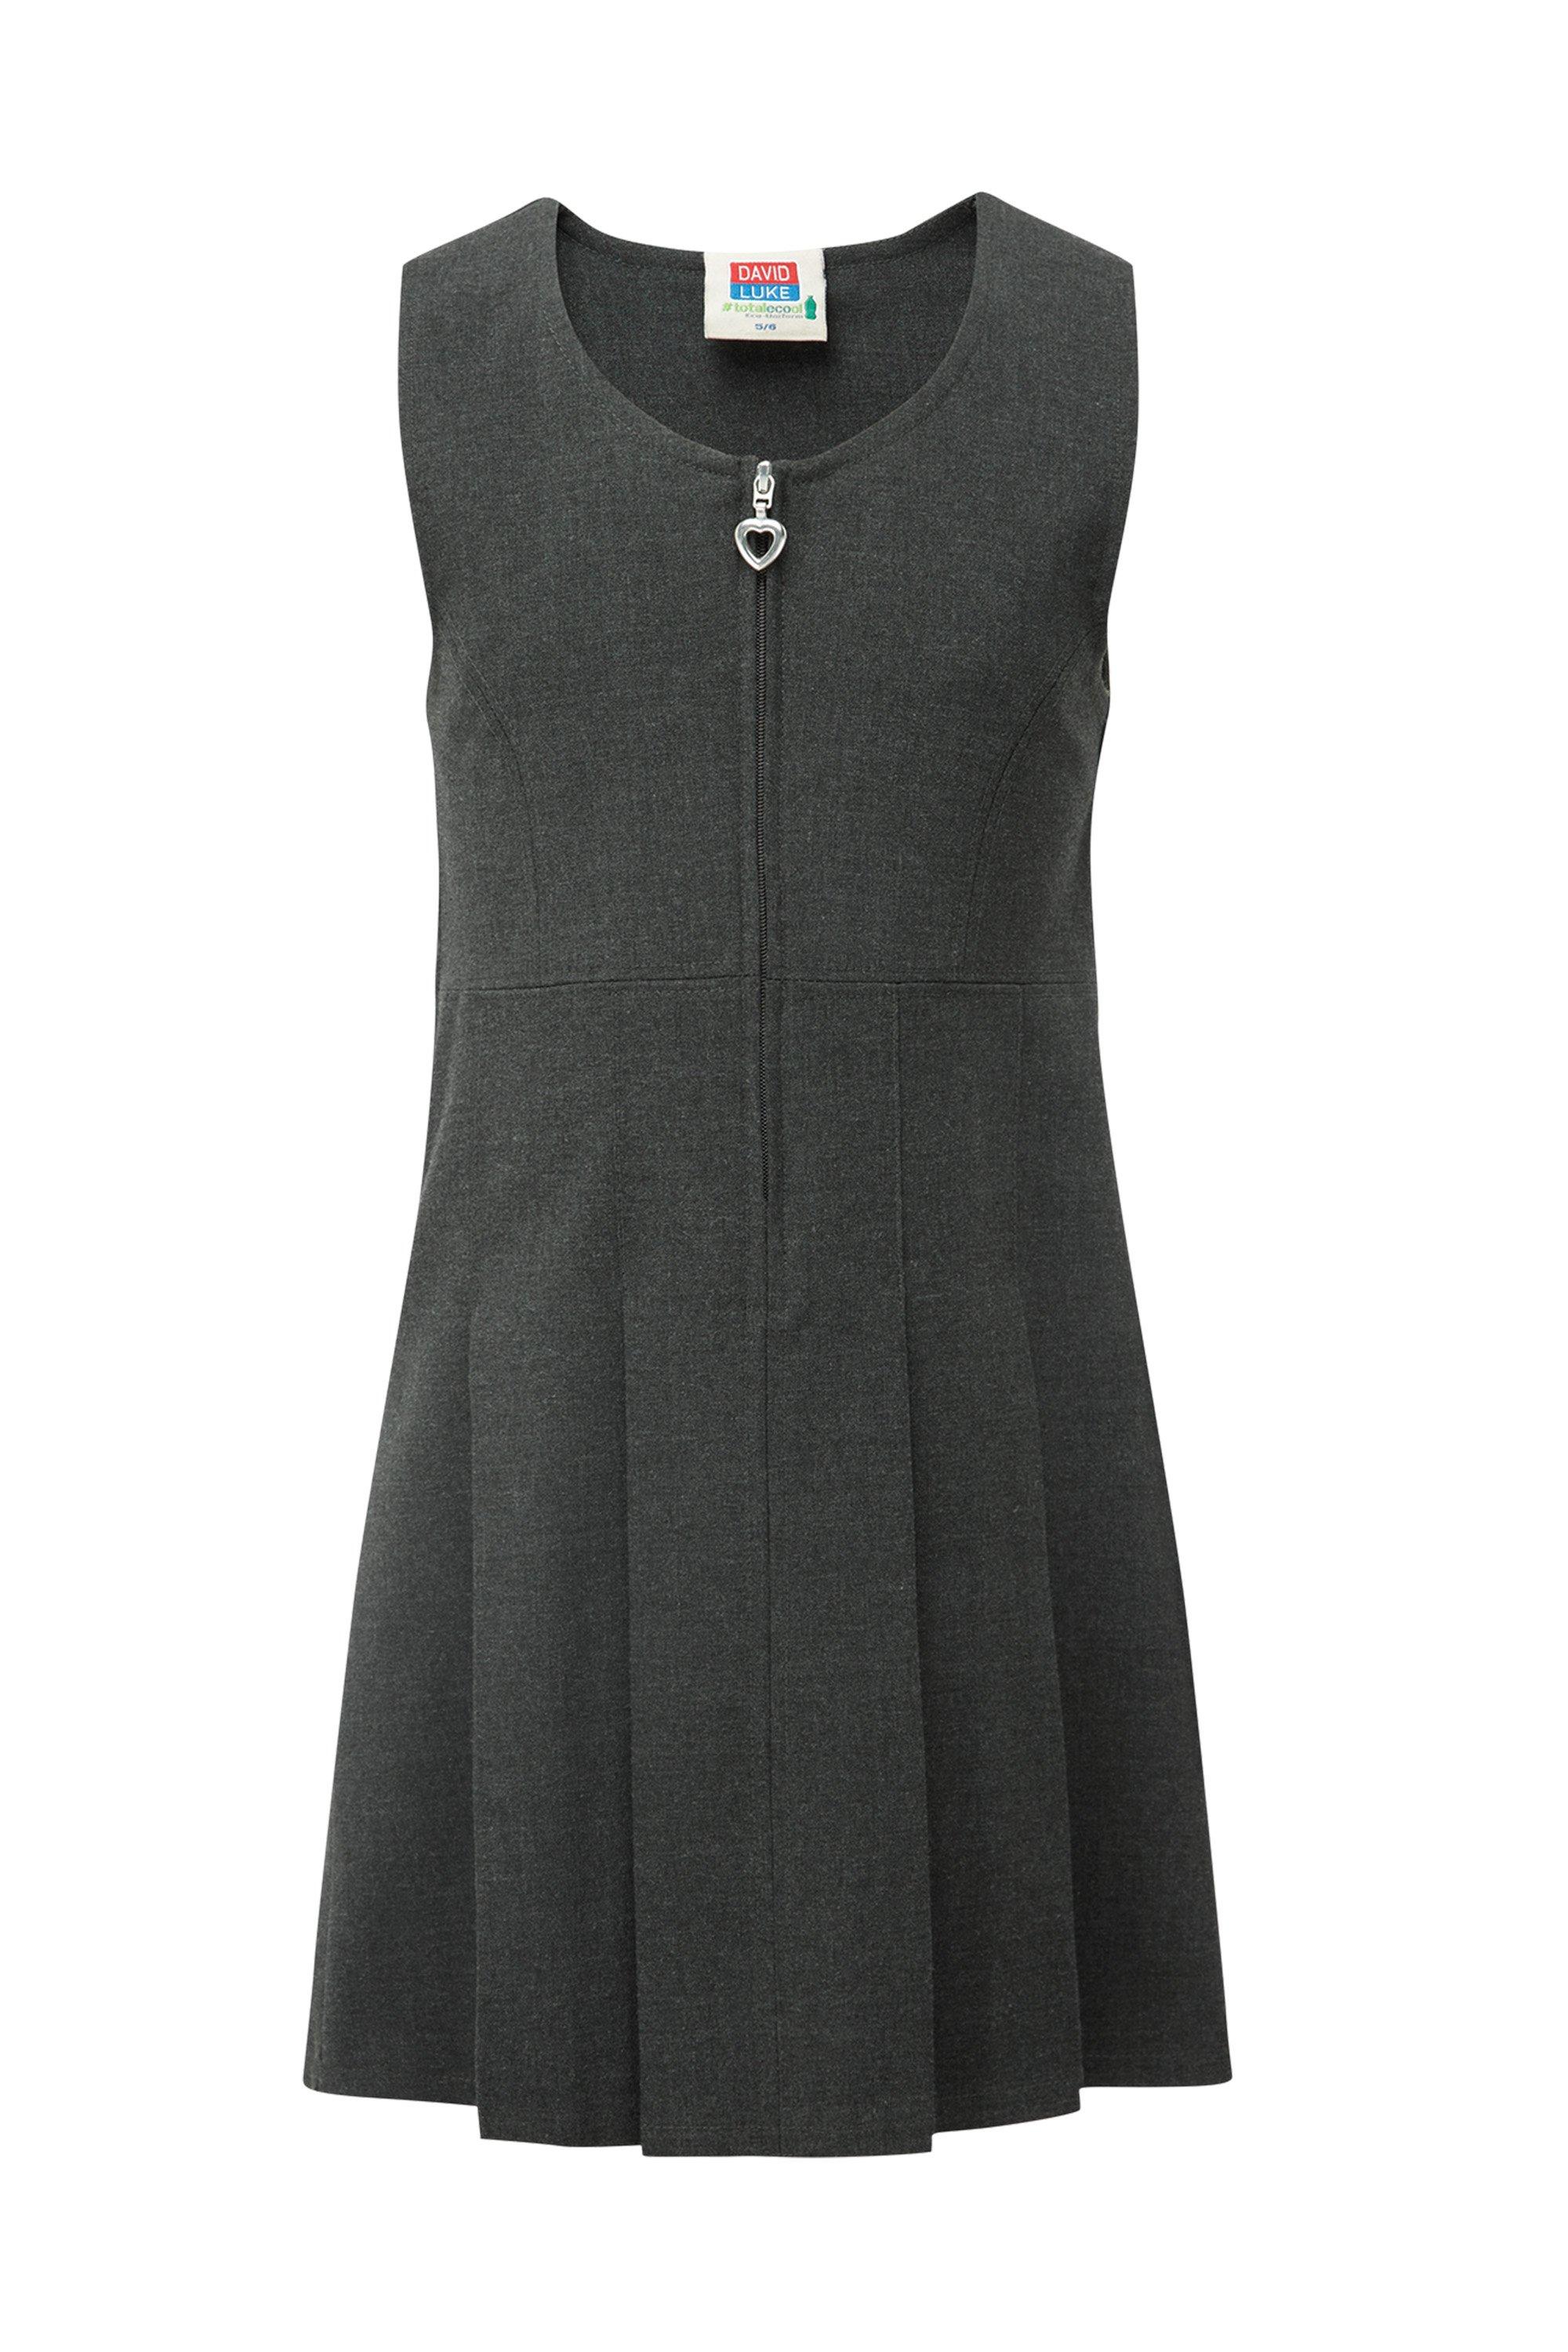 Школьное платье-сарафан David Luke, серый сарафан размер 5 лет синий